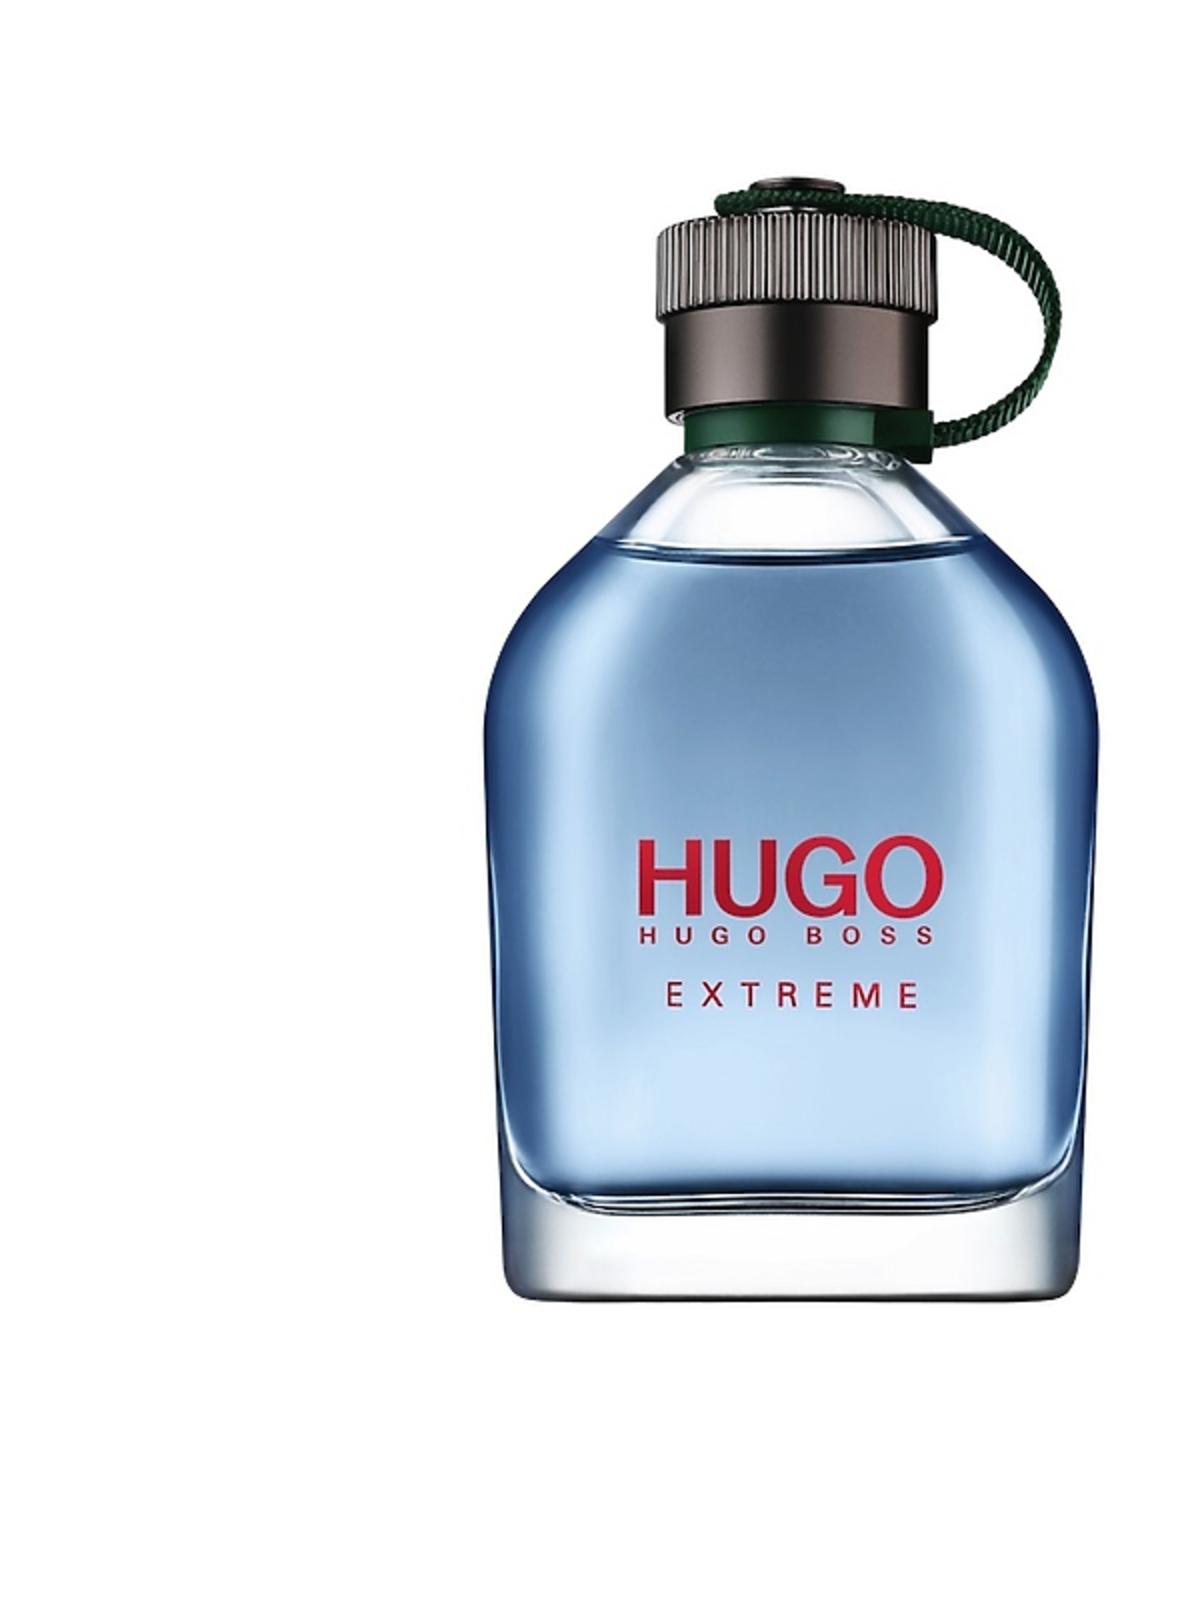 Perfumy - prezent na święta 2016 dla mężczyzny: Hugo Man Extreme, EDP, cena: 259 zł / 60 ml